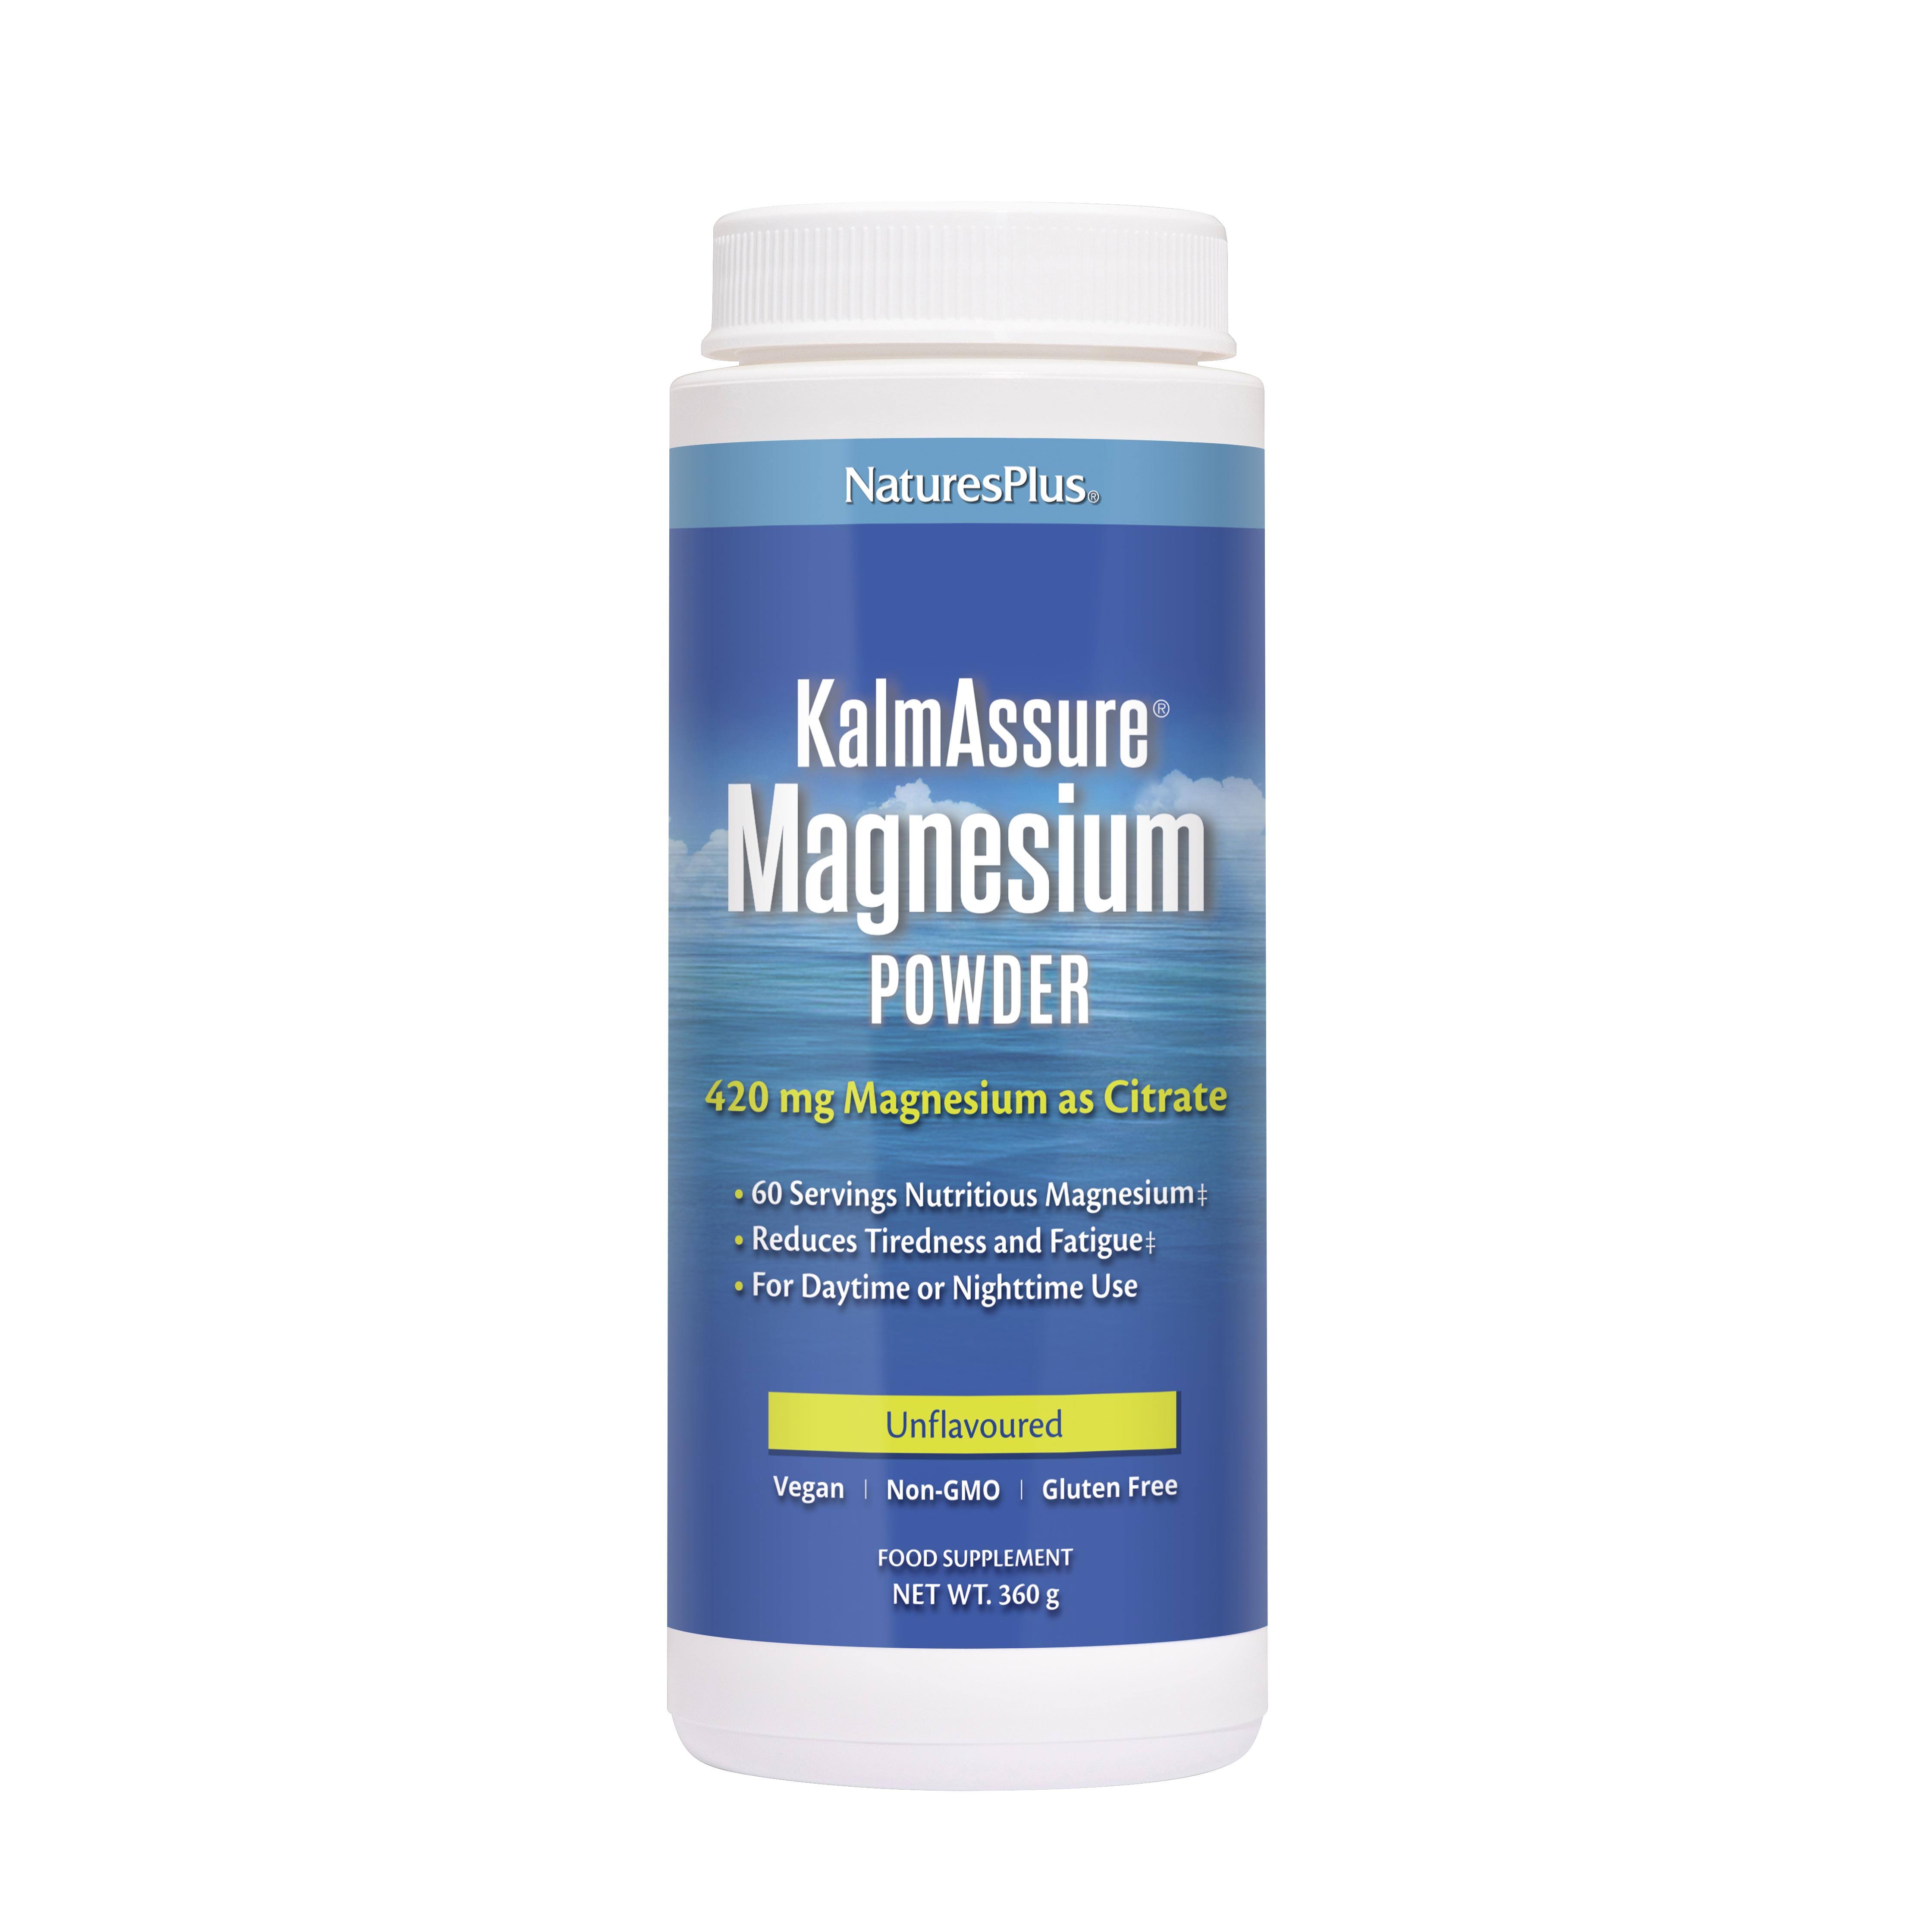 Nature's Plus Kalmassure Magnesium Supplement - 360g